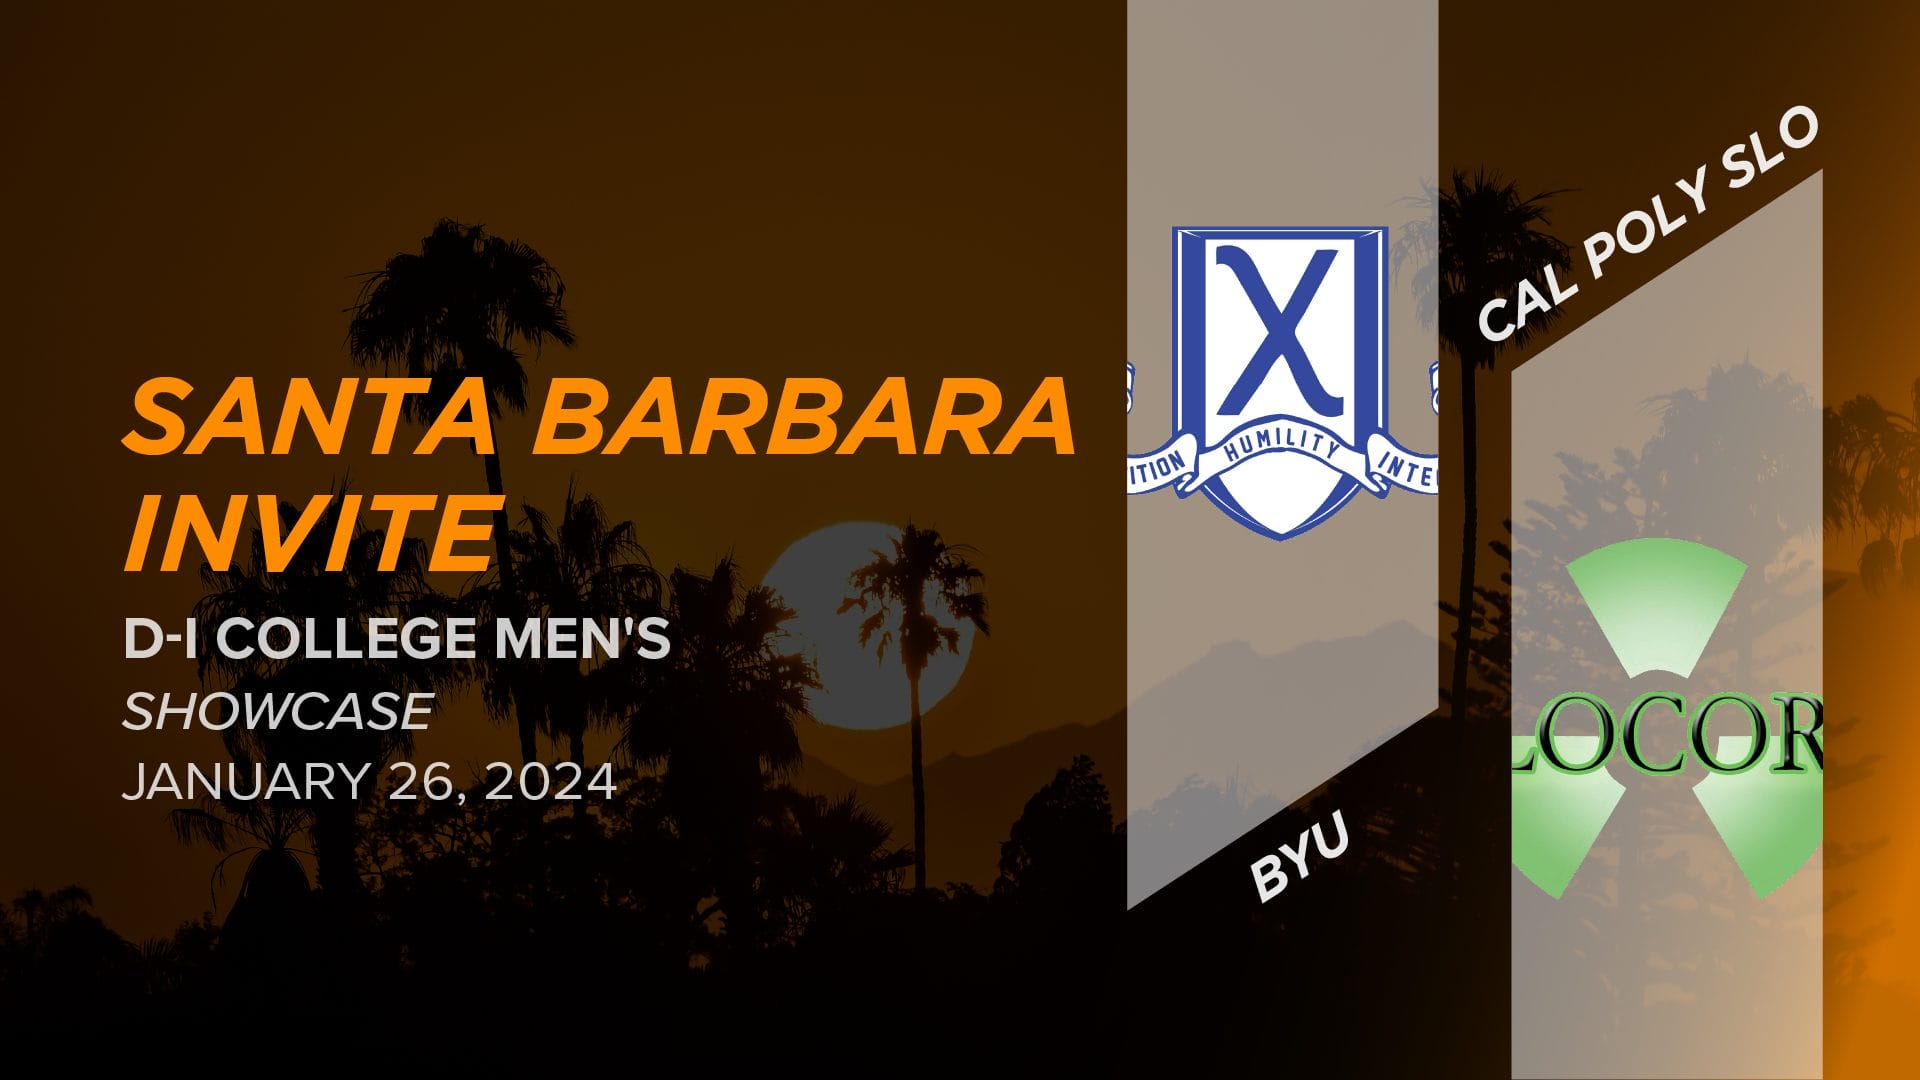 BYU vs. Cal Poly SLO (Men's Showcase) 2024 Santa Barbara Invite (DI